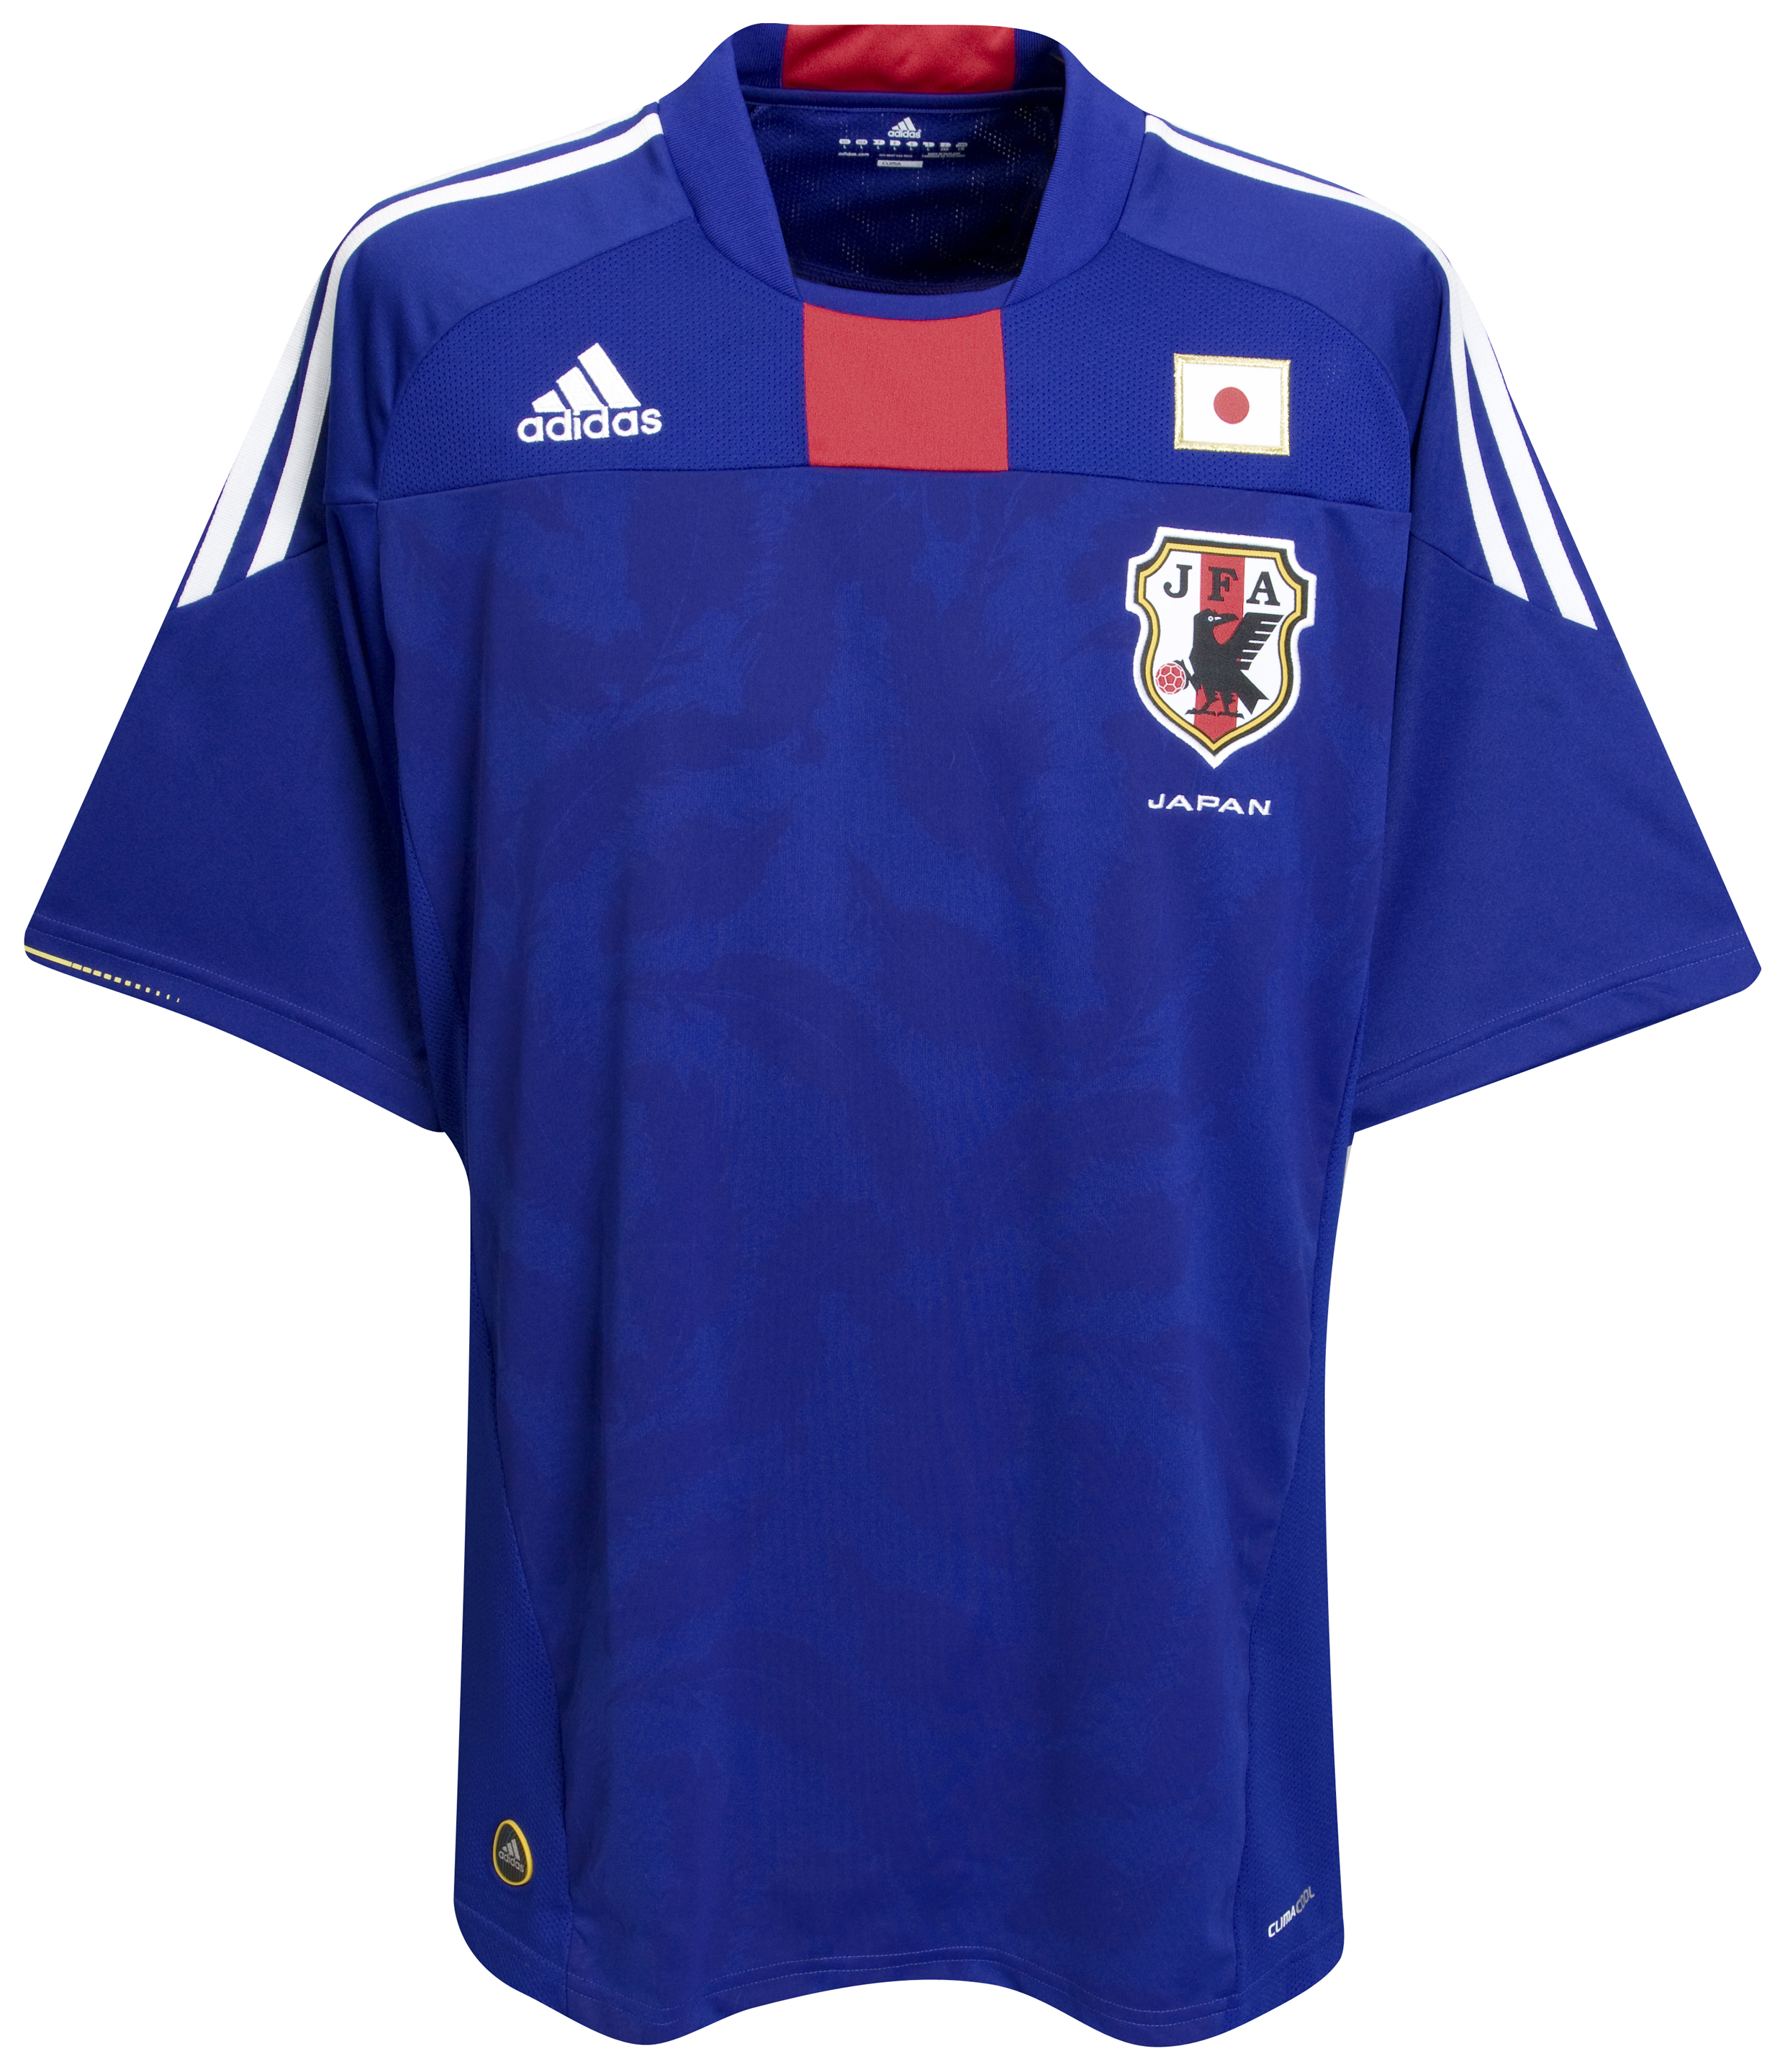 ملابس المنتخبات لكأس العالم 2010 Kb-63744